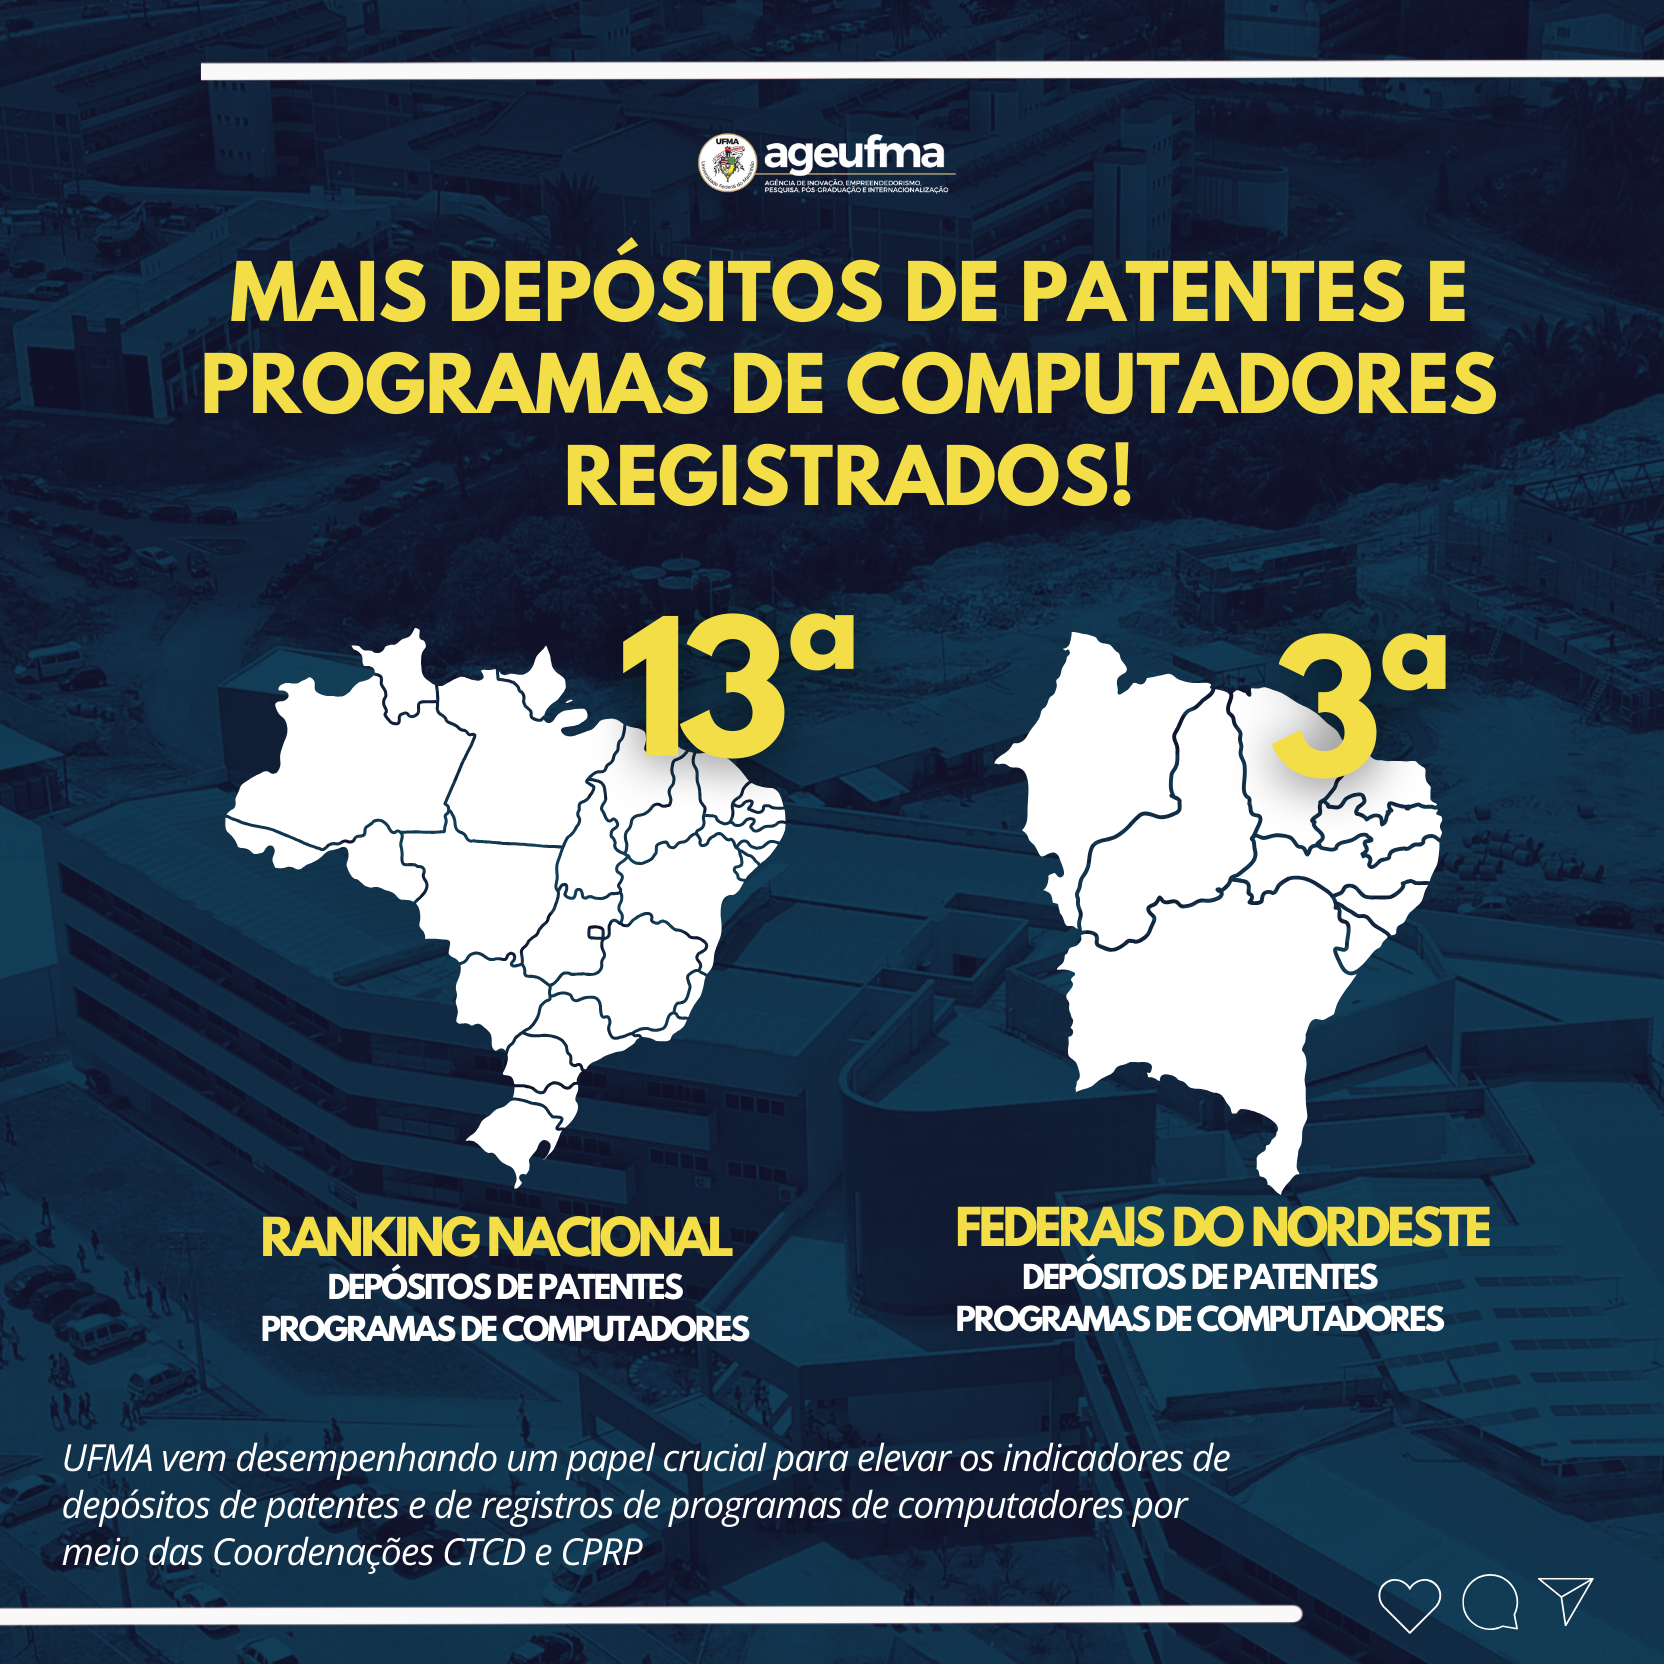 UFMA se destaca como uma das principais instituições em Depósitos de Patentes e Programas de Computadores no Brasil